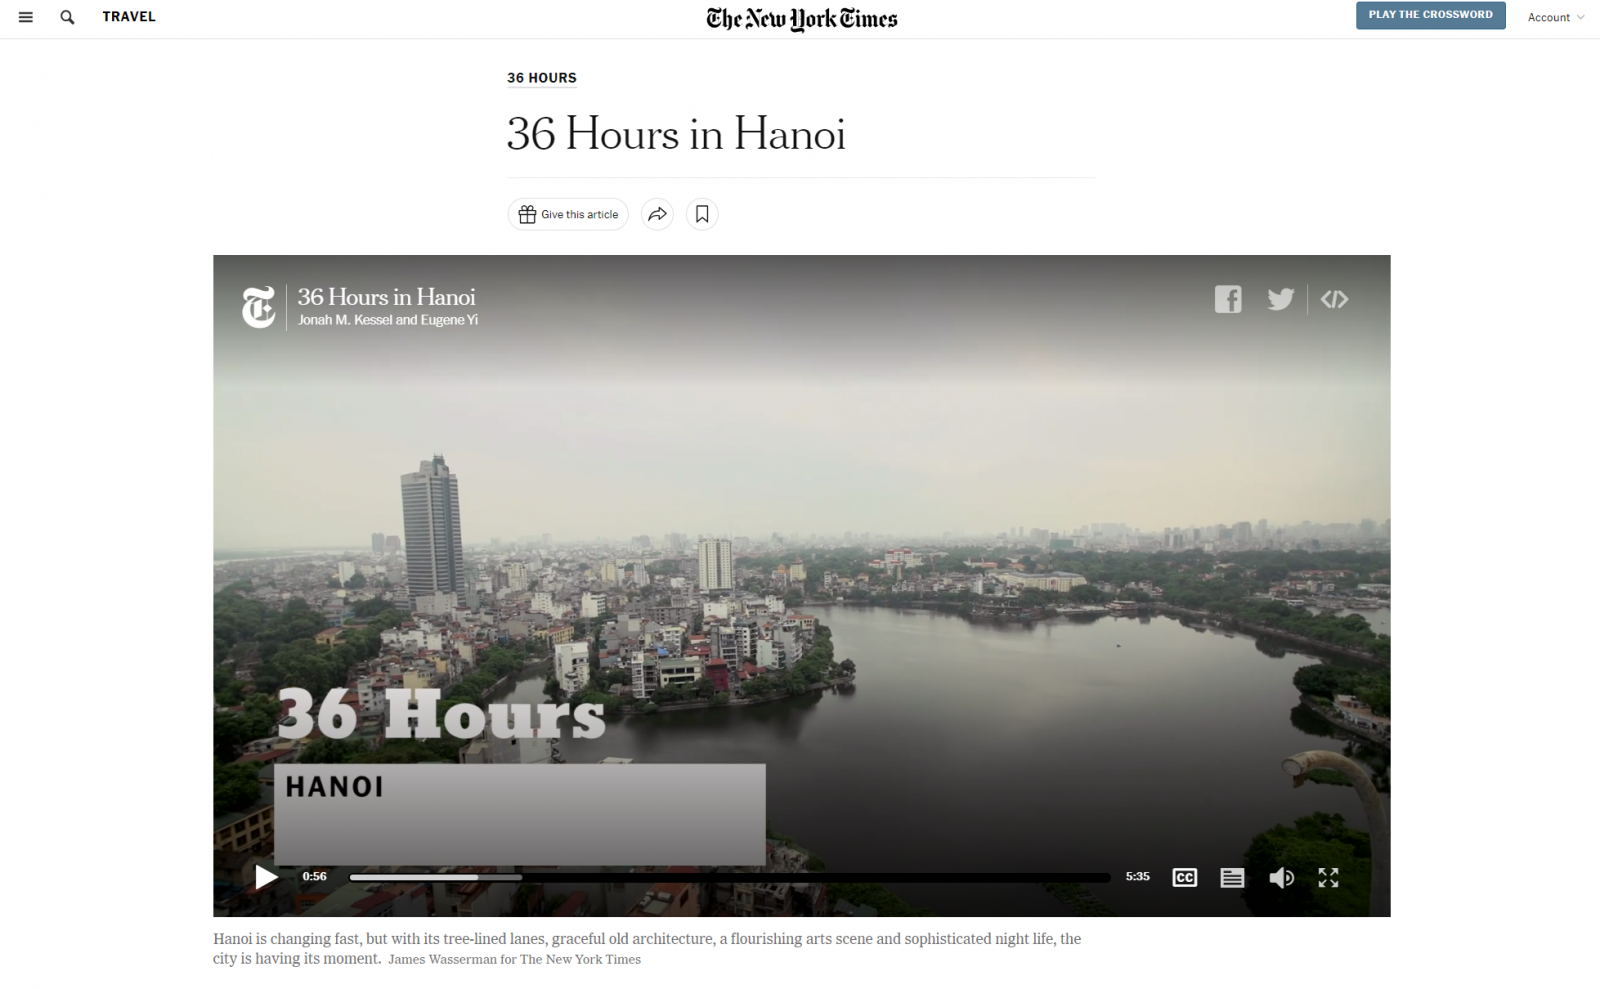 NYT giới thiệu Hà Nội trong chuyên mục 36 Hours năm 2019 | Quan Dinh H.